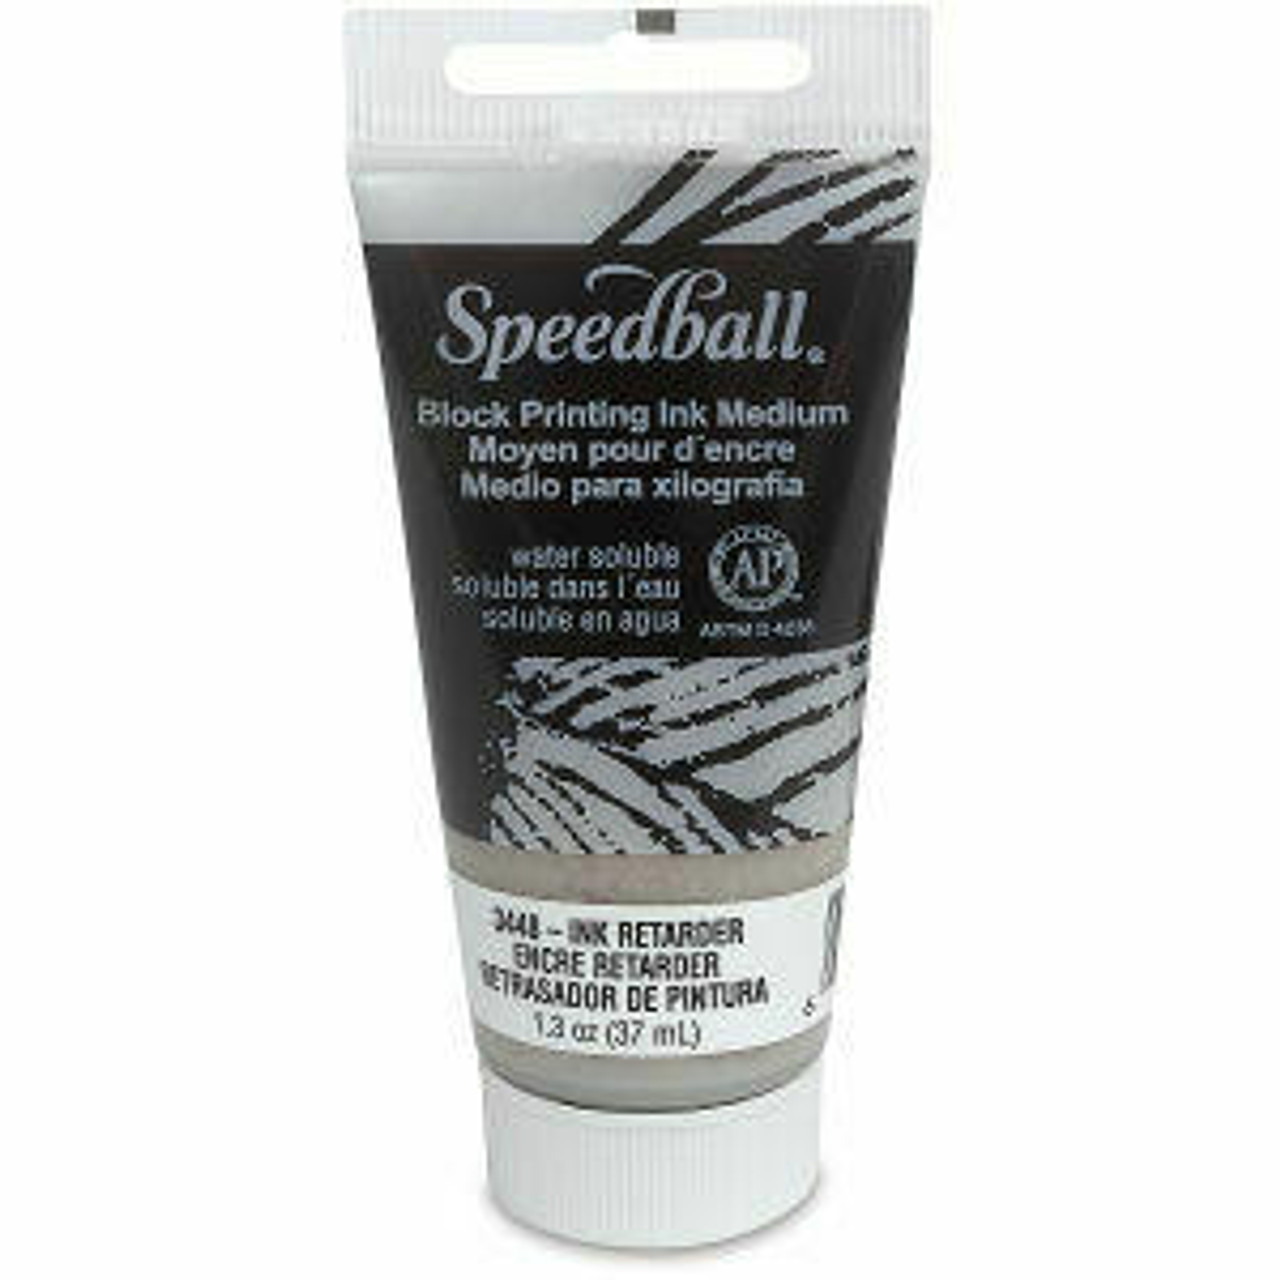 Speedball Block Printing Water Soluble Ink 5 oz - Black